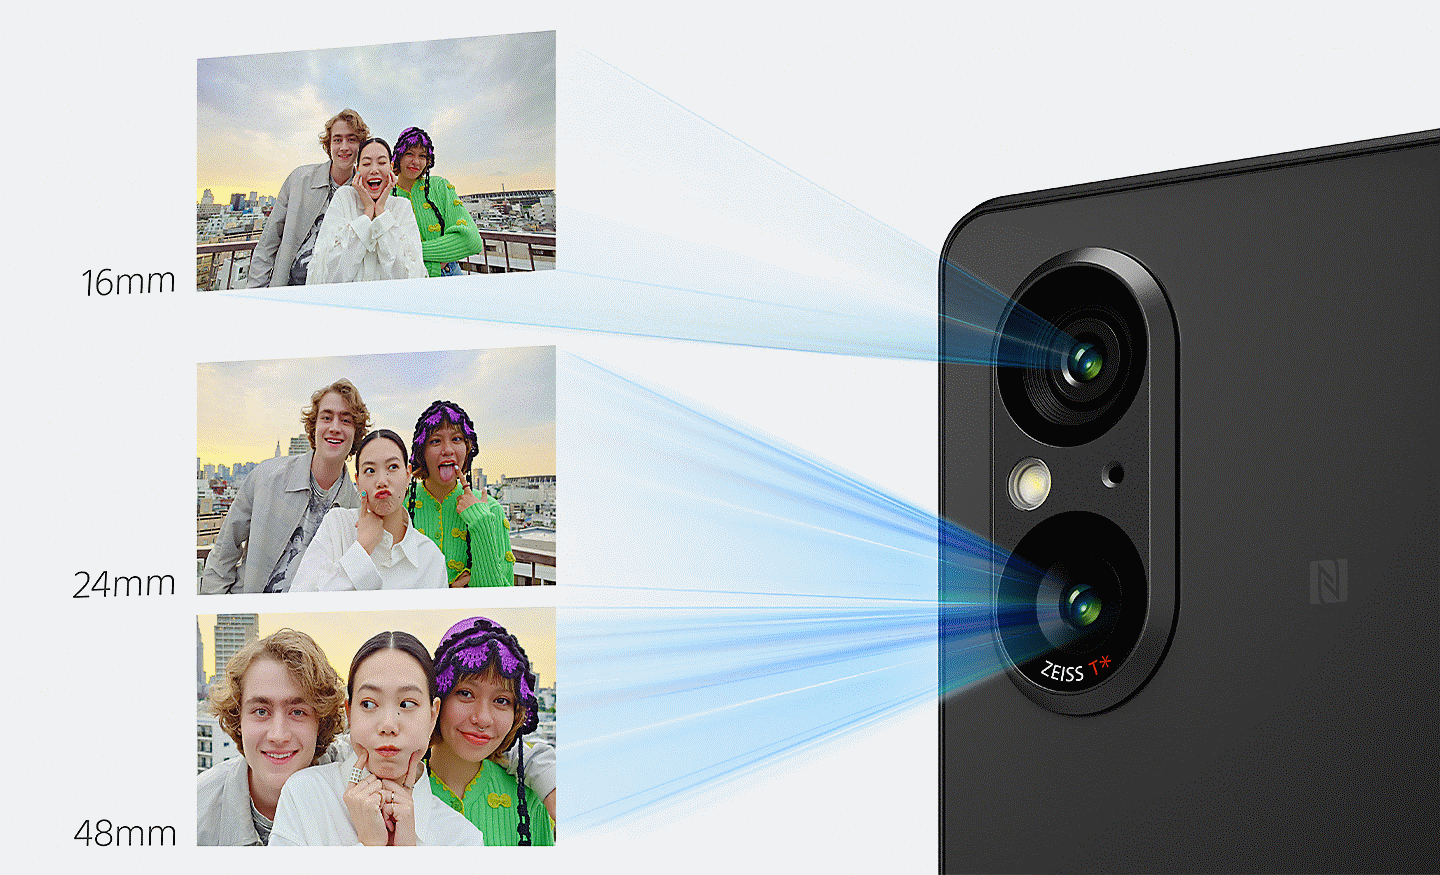 Hình ảnh Xperia 5 V với các đường màu xanh lam và 3 ảnh chụp từ ống kính camera, với mỗi ảnh ngày càng gần đối tượng hơn